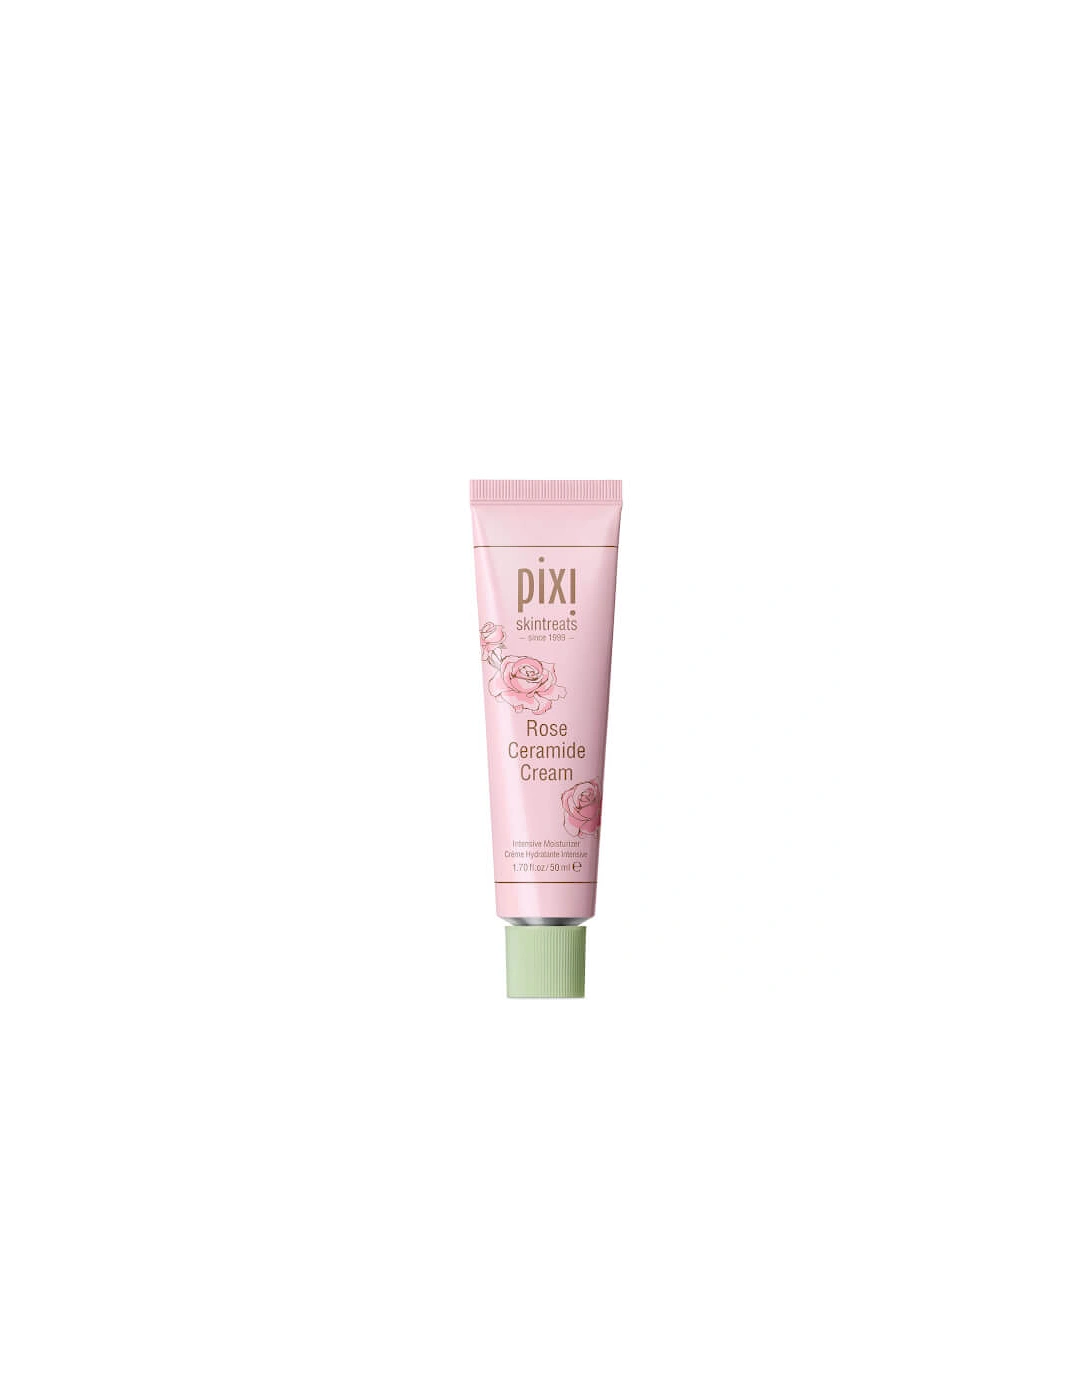 Rose Ceramide Cream 50ml Moisturizer - PIXI, 2 of 1